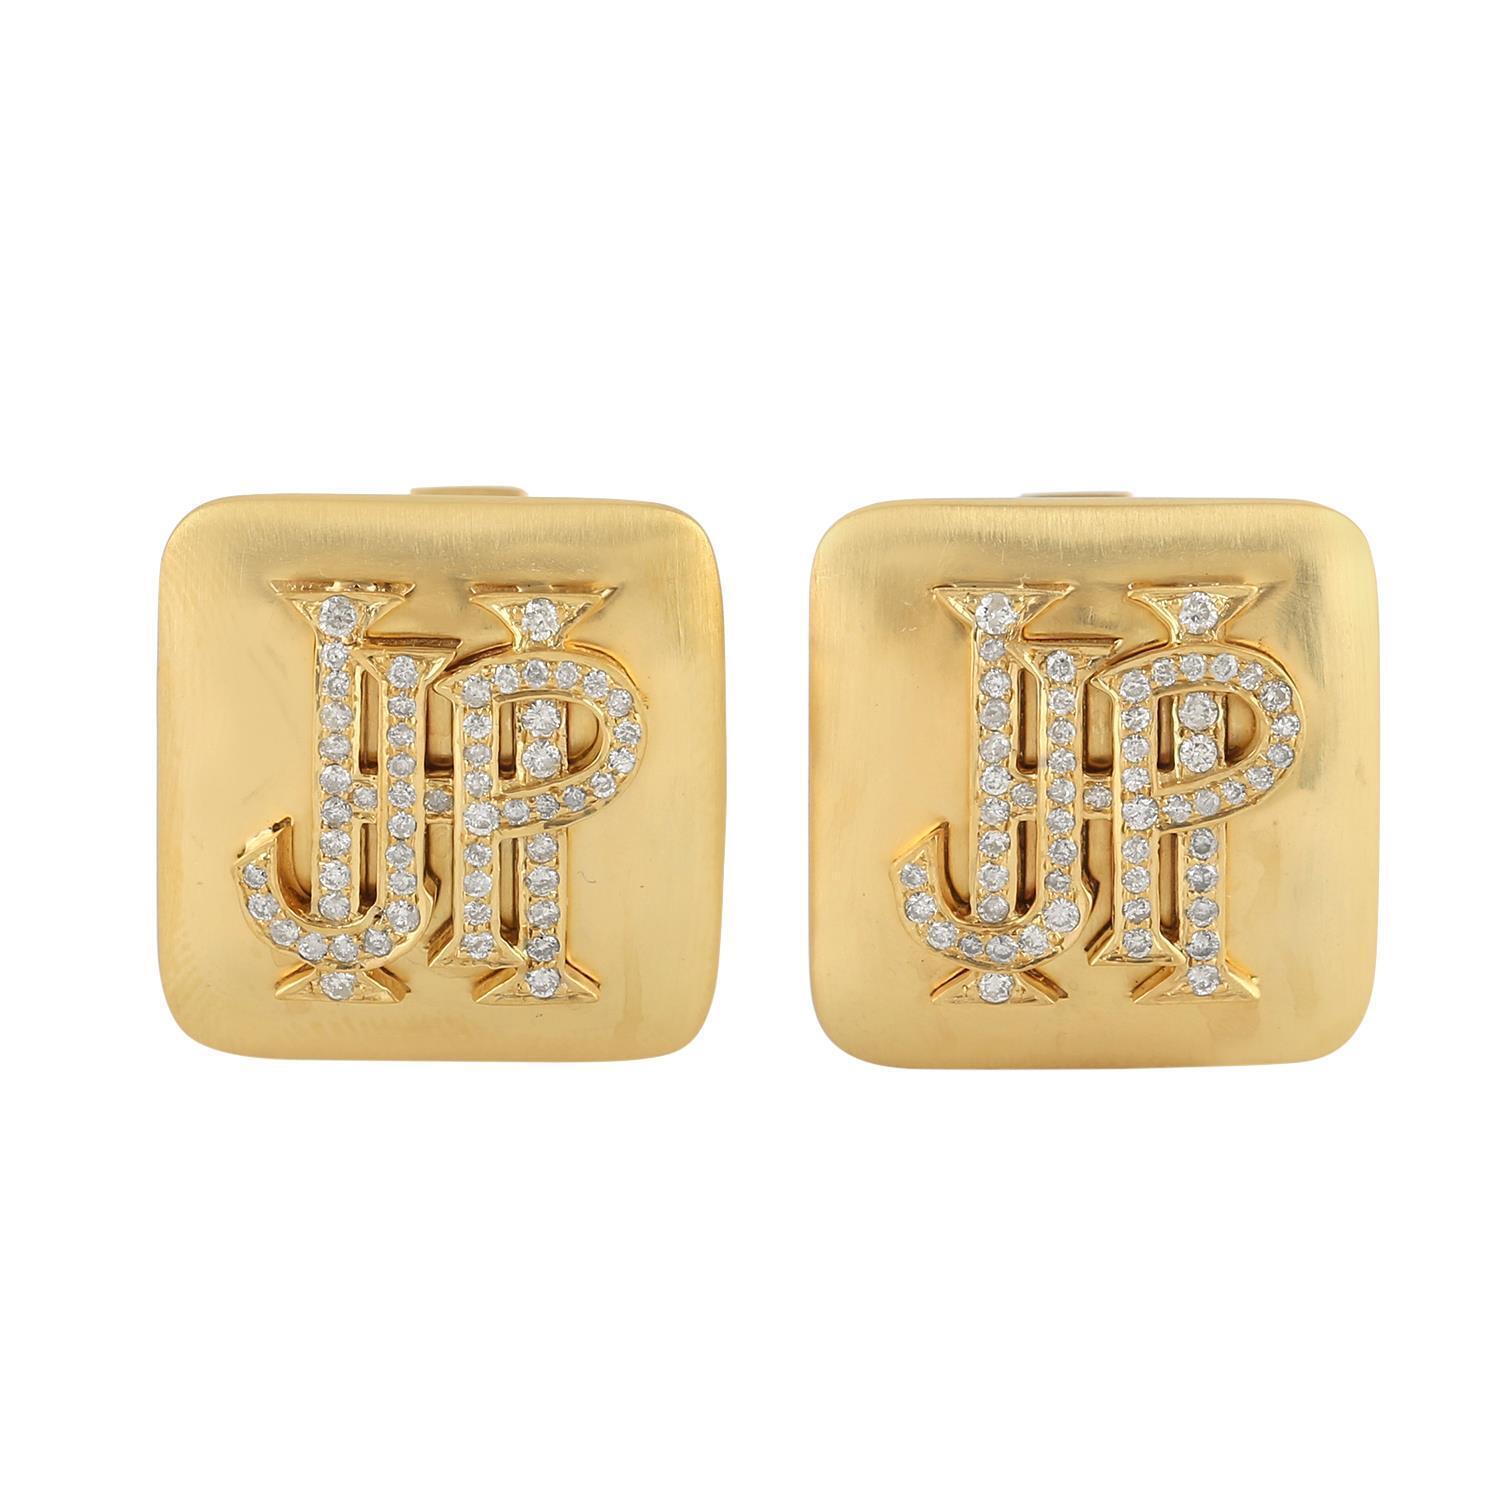 Fabriqués en or 14 carats, ces boutons de manchette sont sertis de diamants de 0,73 carat en or jaune. Voir d'autres collections de boutons de manchette.

SUIVRE  La vitrine de MEGHNA JEWELS pour découvrir la dernière collection et les pièces